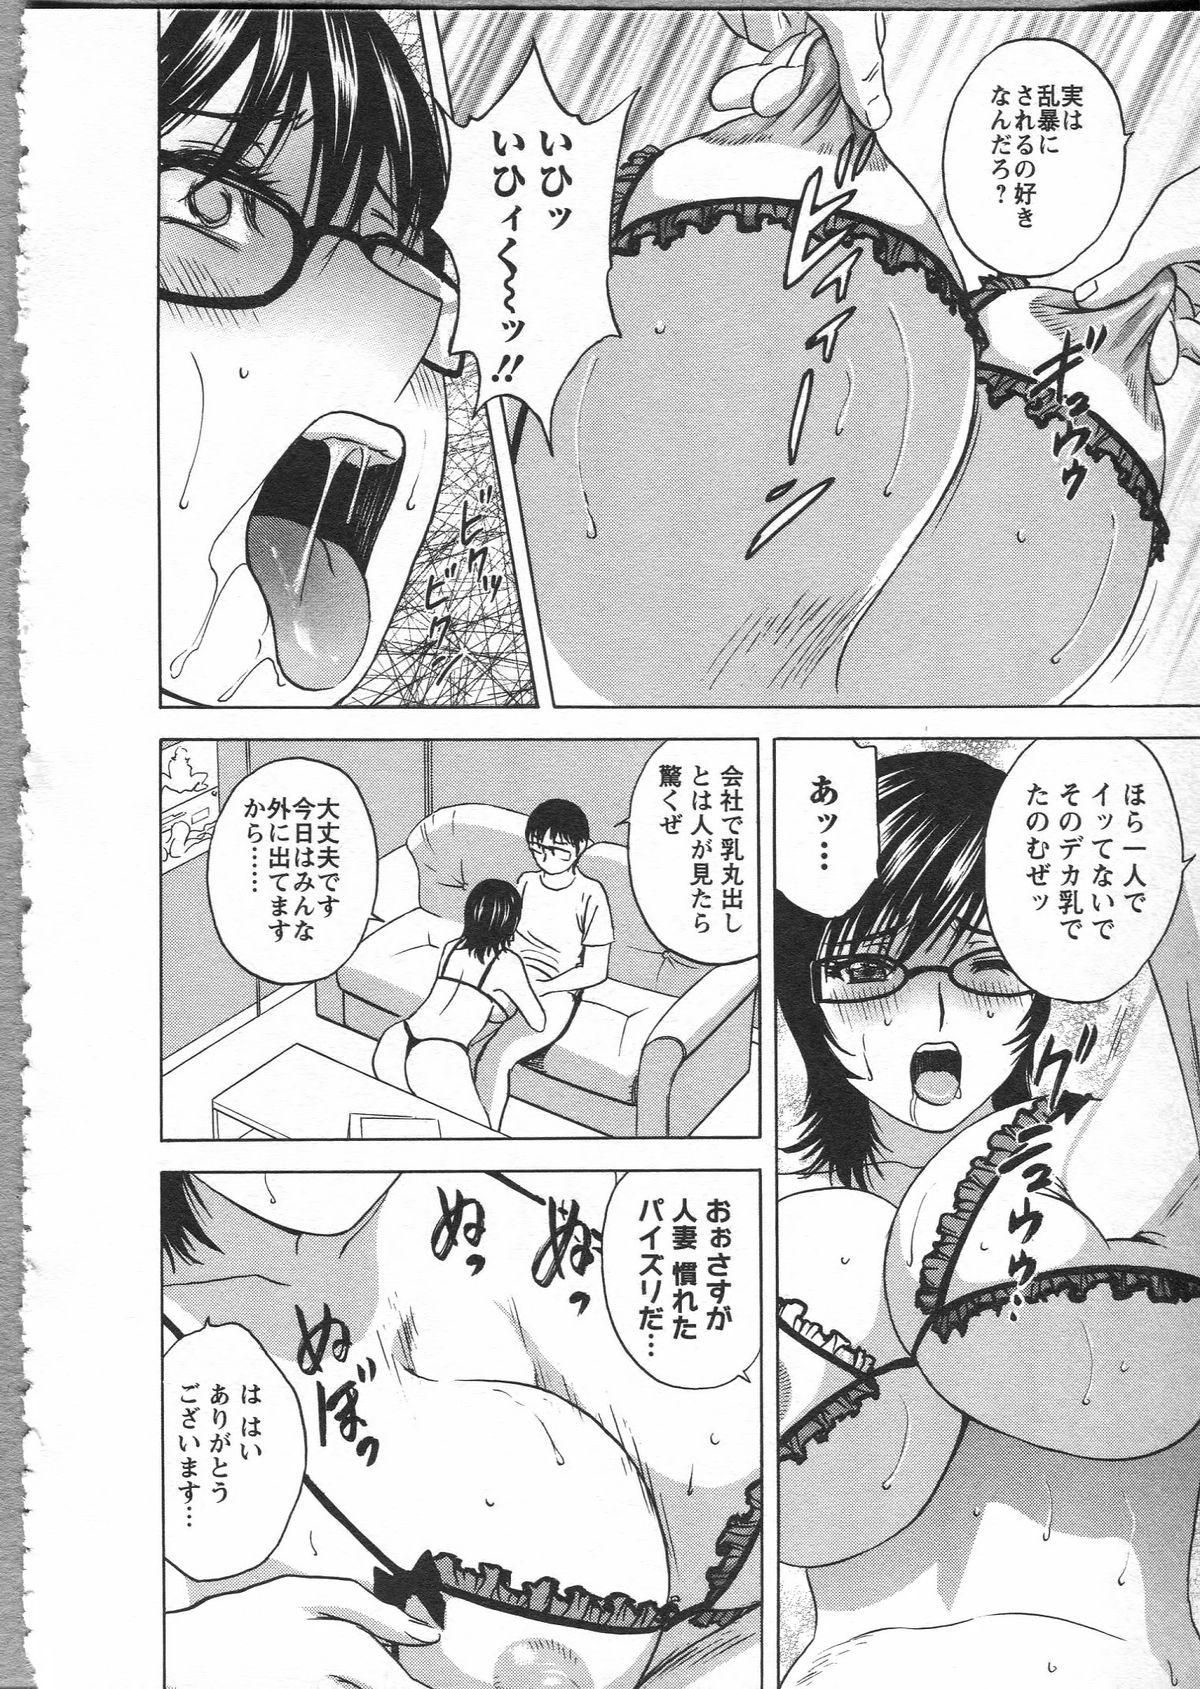 Manga no youna Hitozuma to no Hibi - Days with Married Women such as Comics. 163